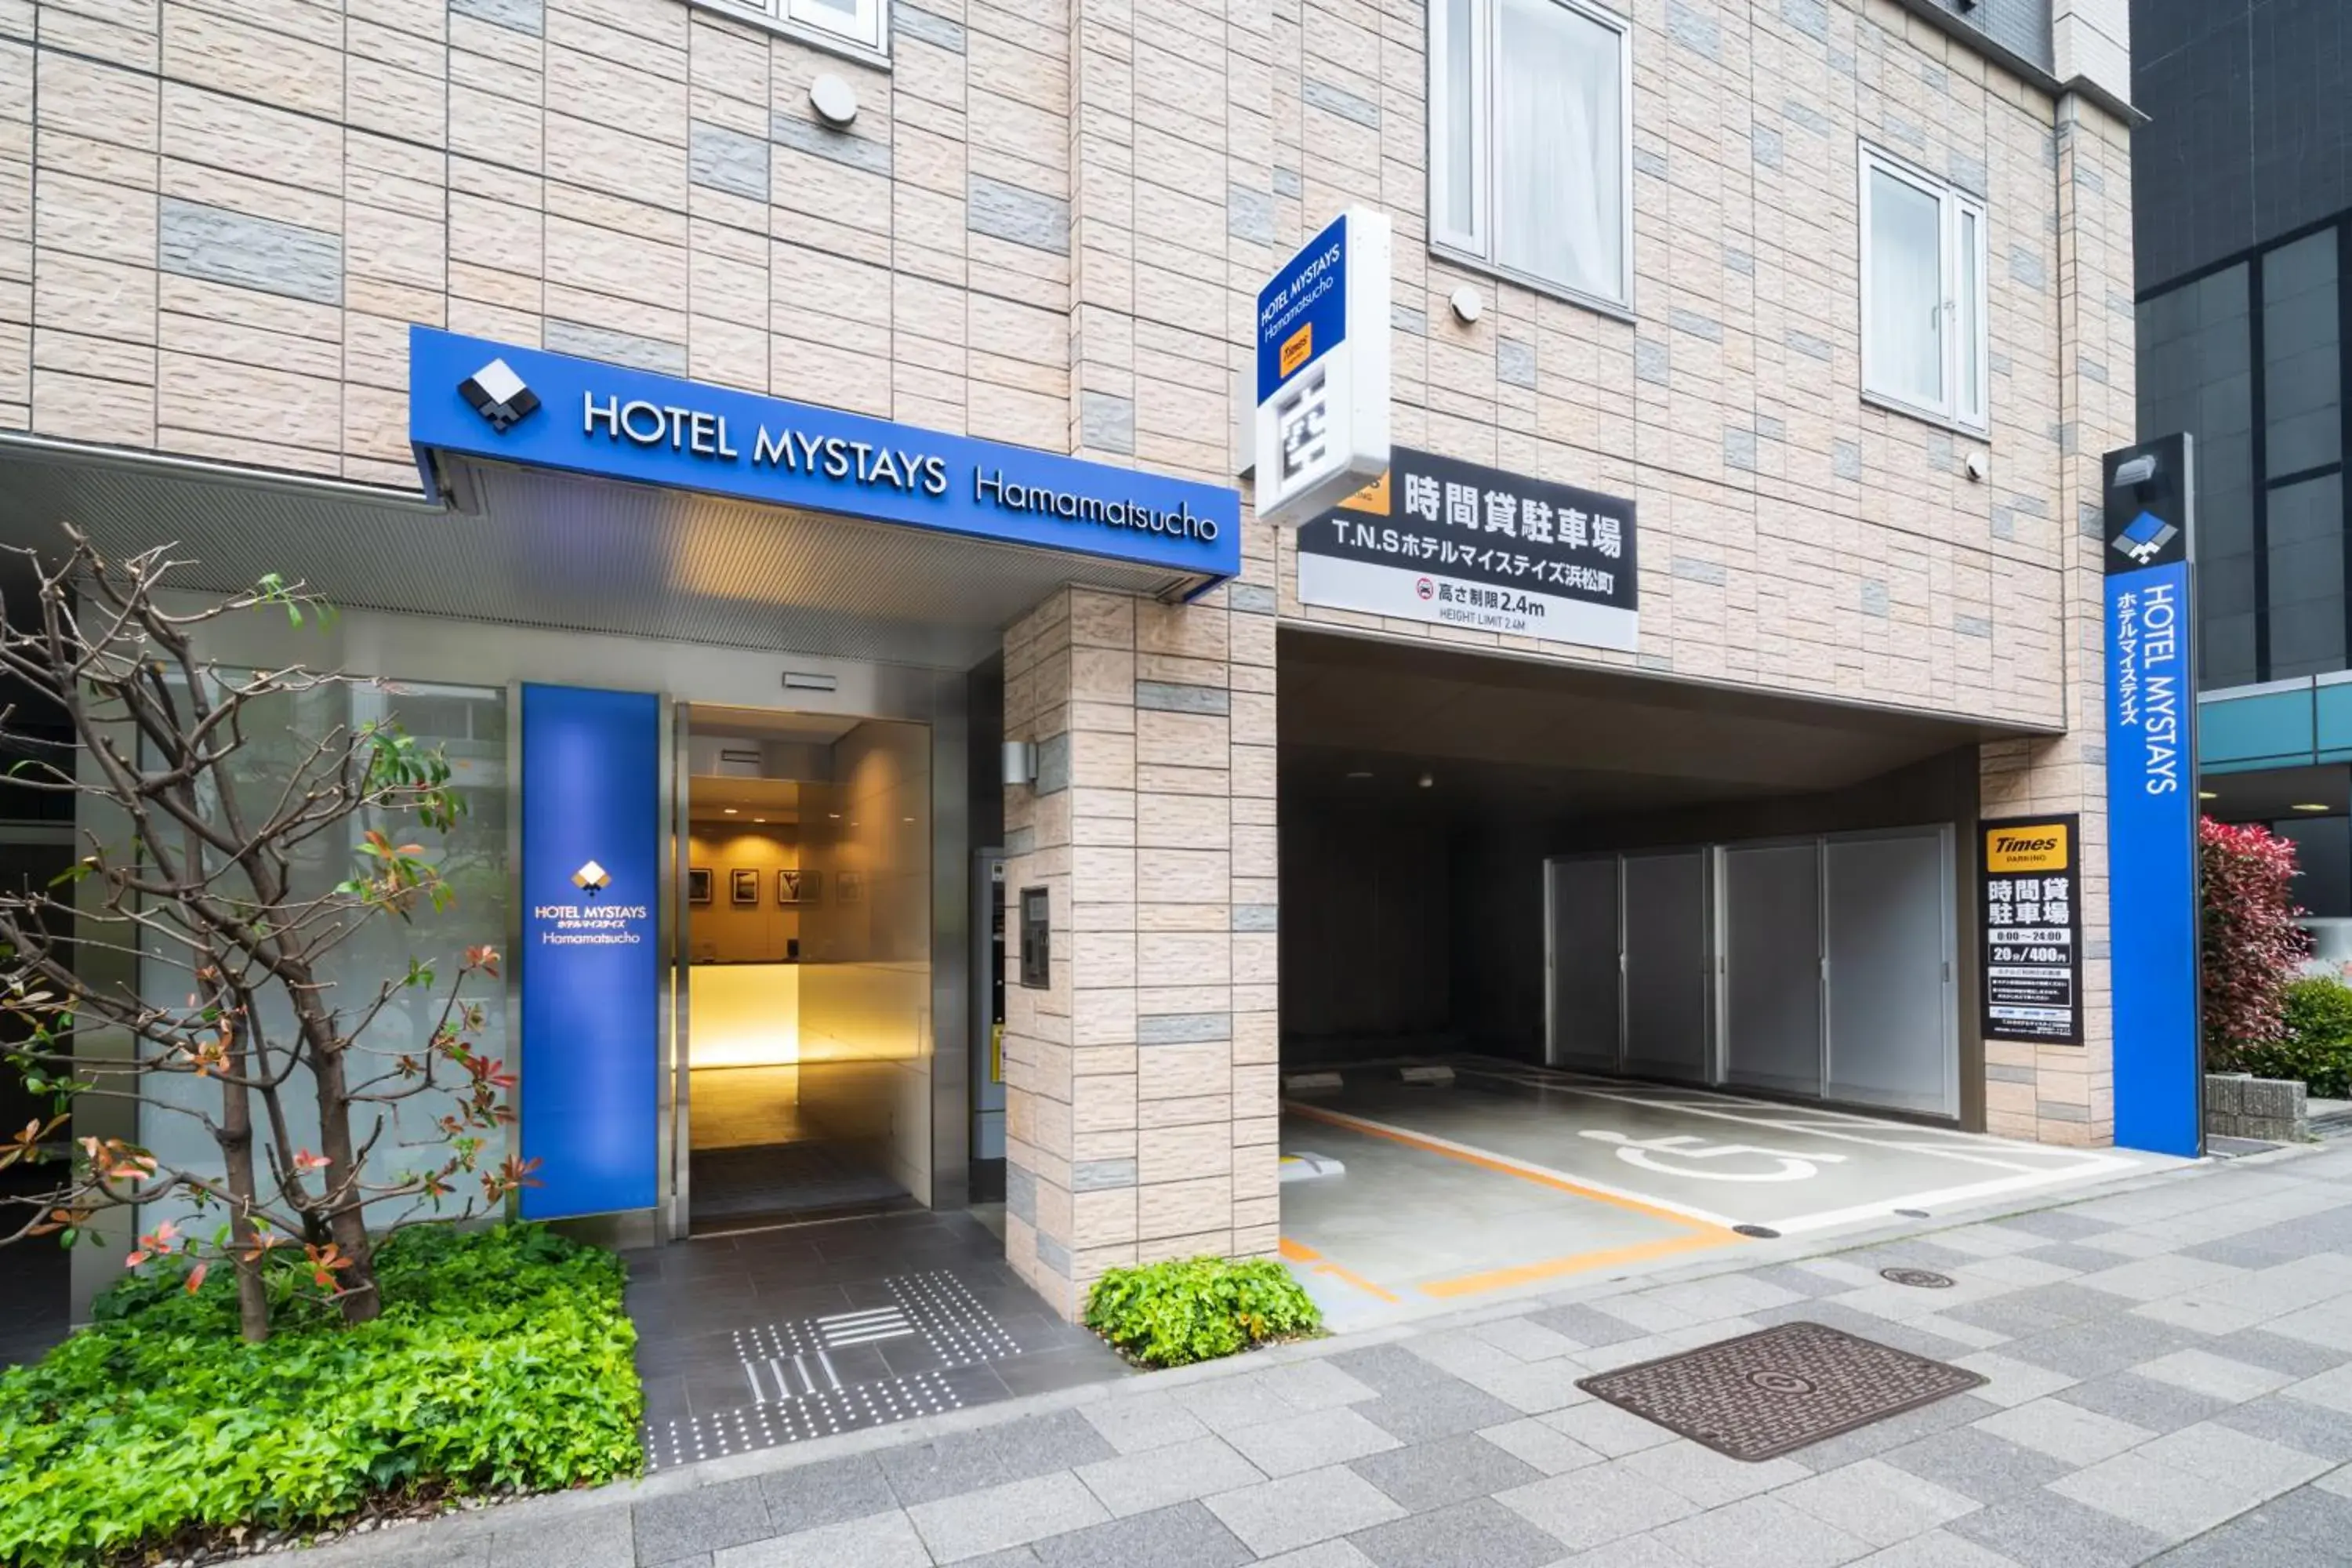 Facade/entrance in HOTEL MYSTAYS Hamamatsucho